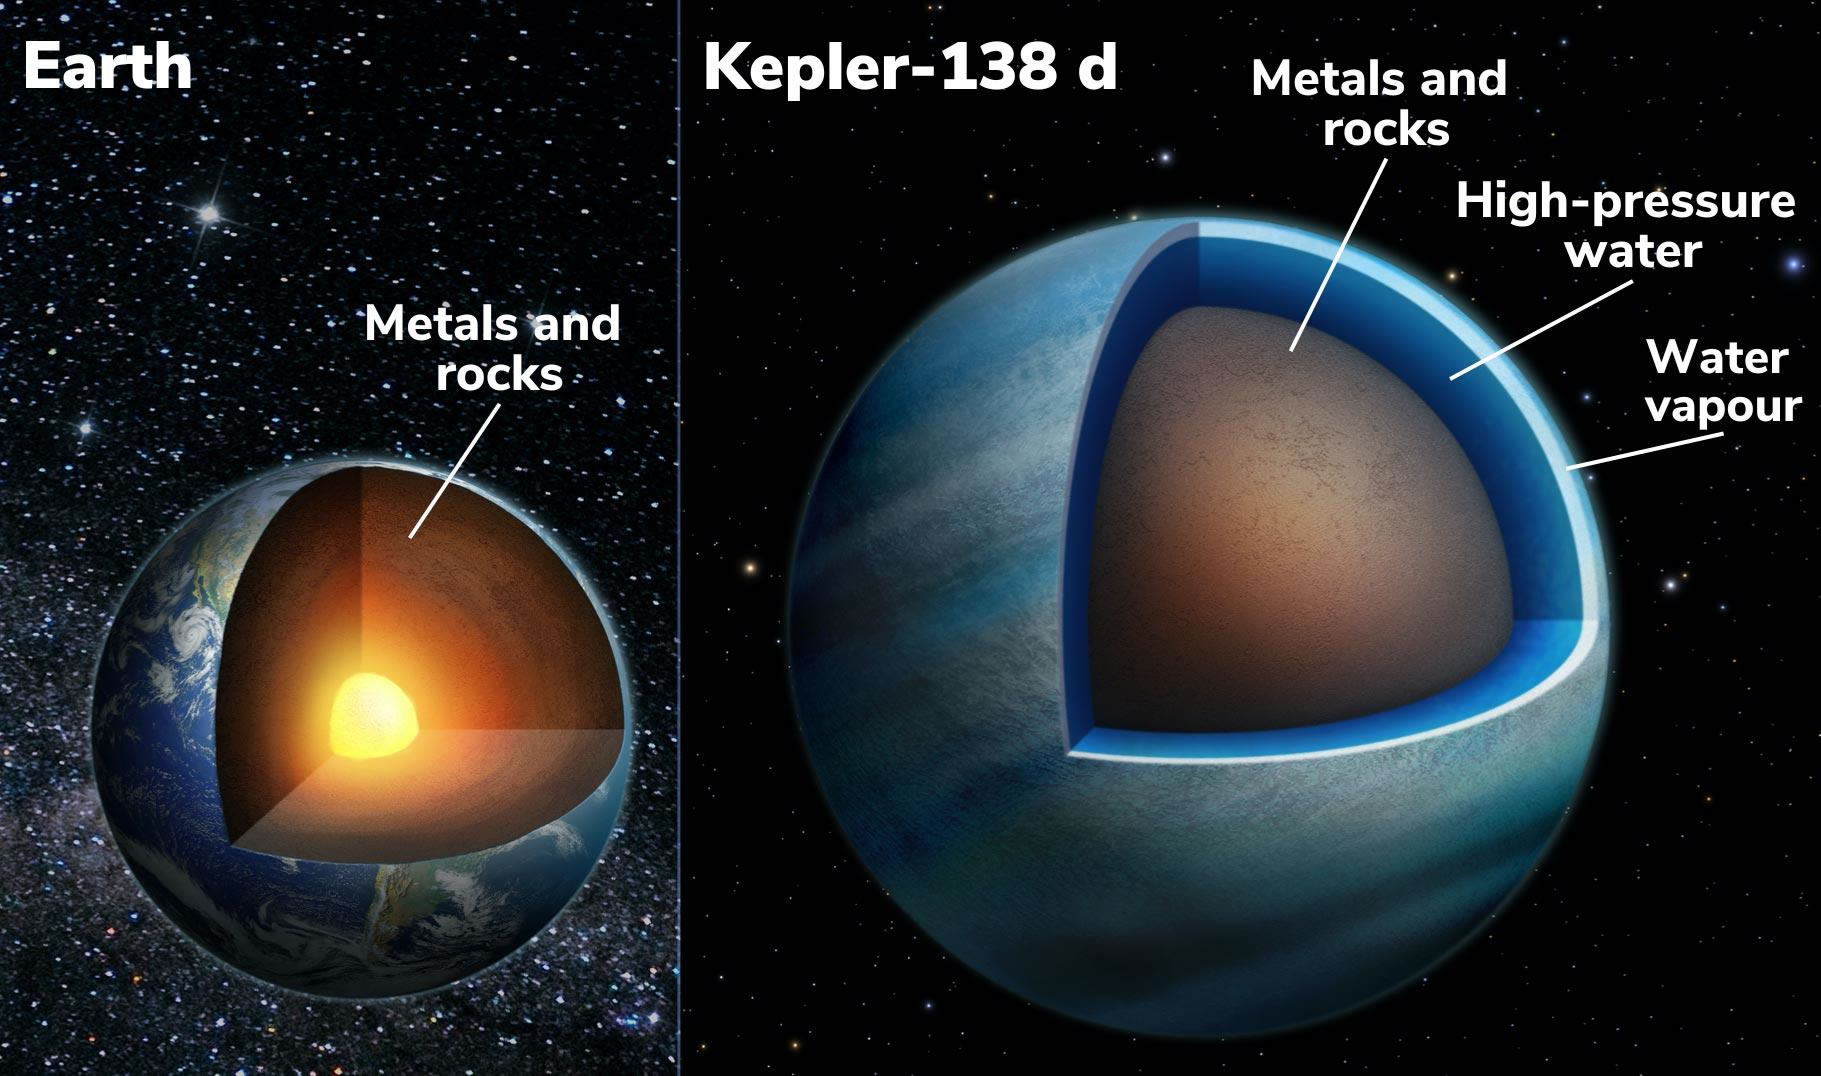 美国宇航局发现一对拥有1000英里深海洋的超级地球Kepler-138 c和Kepler-138 d